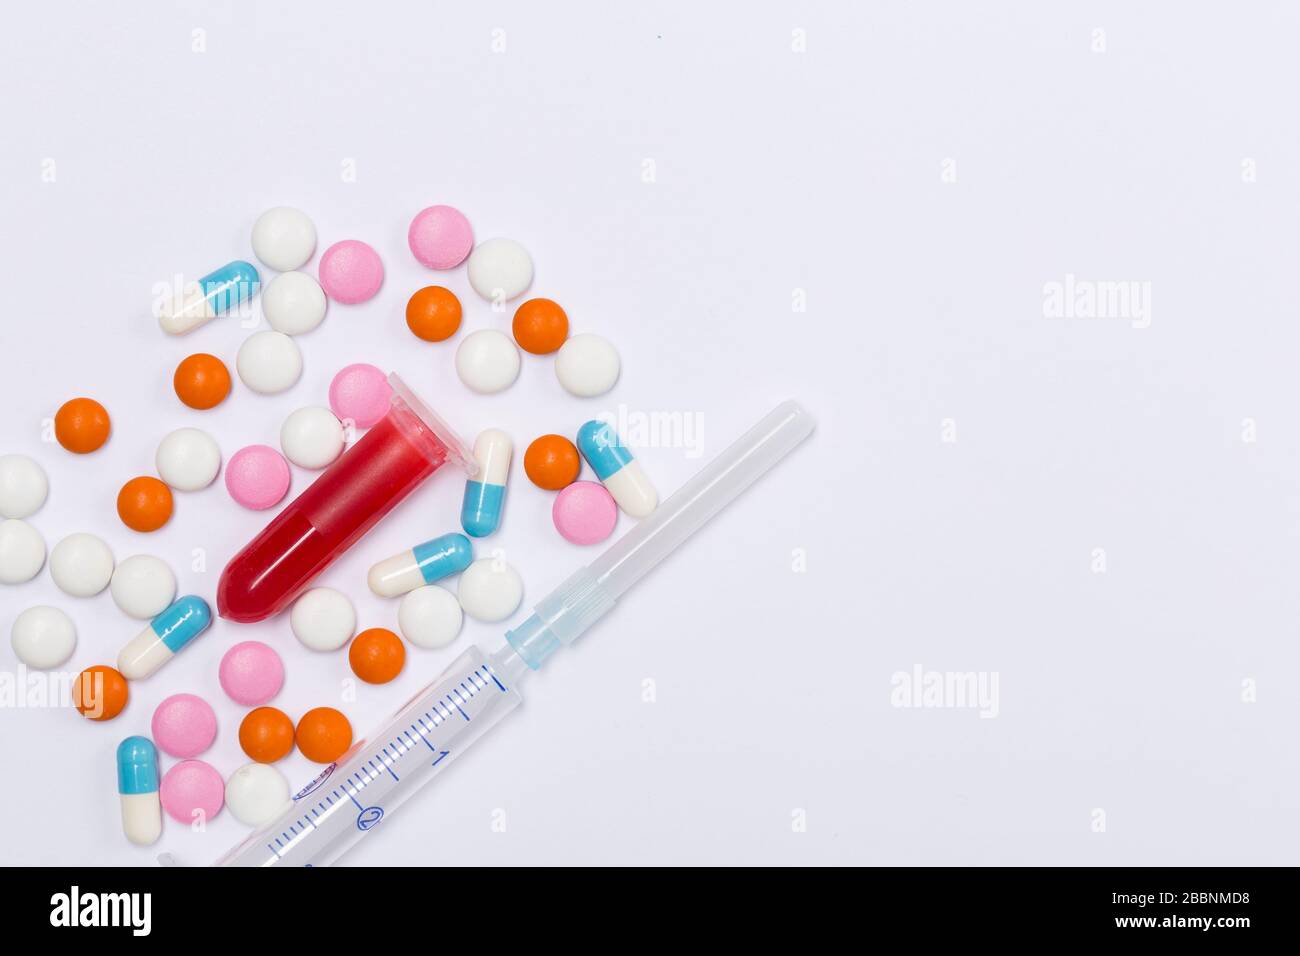 Espace libre. Concept de santé.médicaments pilules, seringue, tube de test sanguin, comprimés et capsules sur fond blanc. Banque D'Images